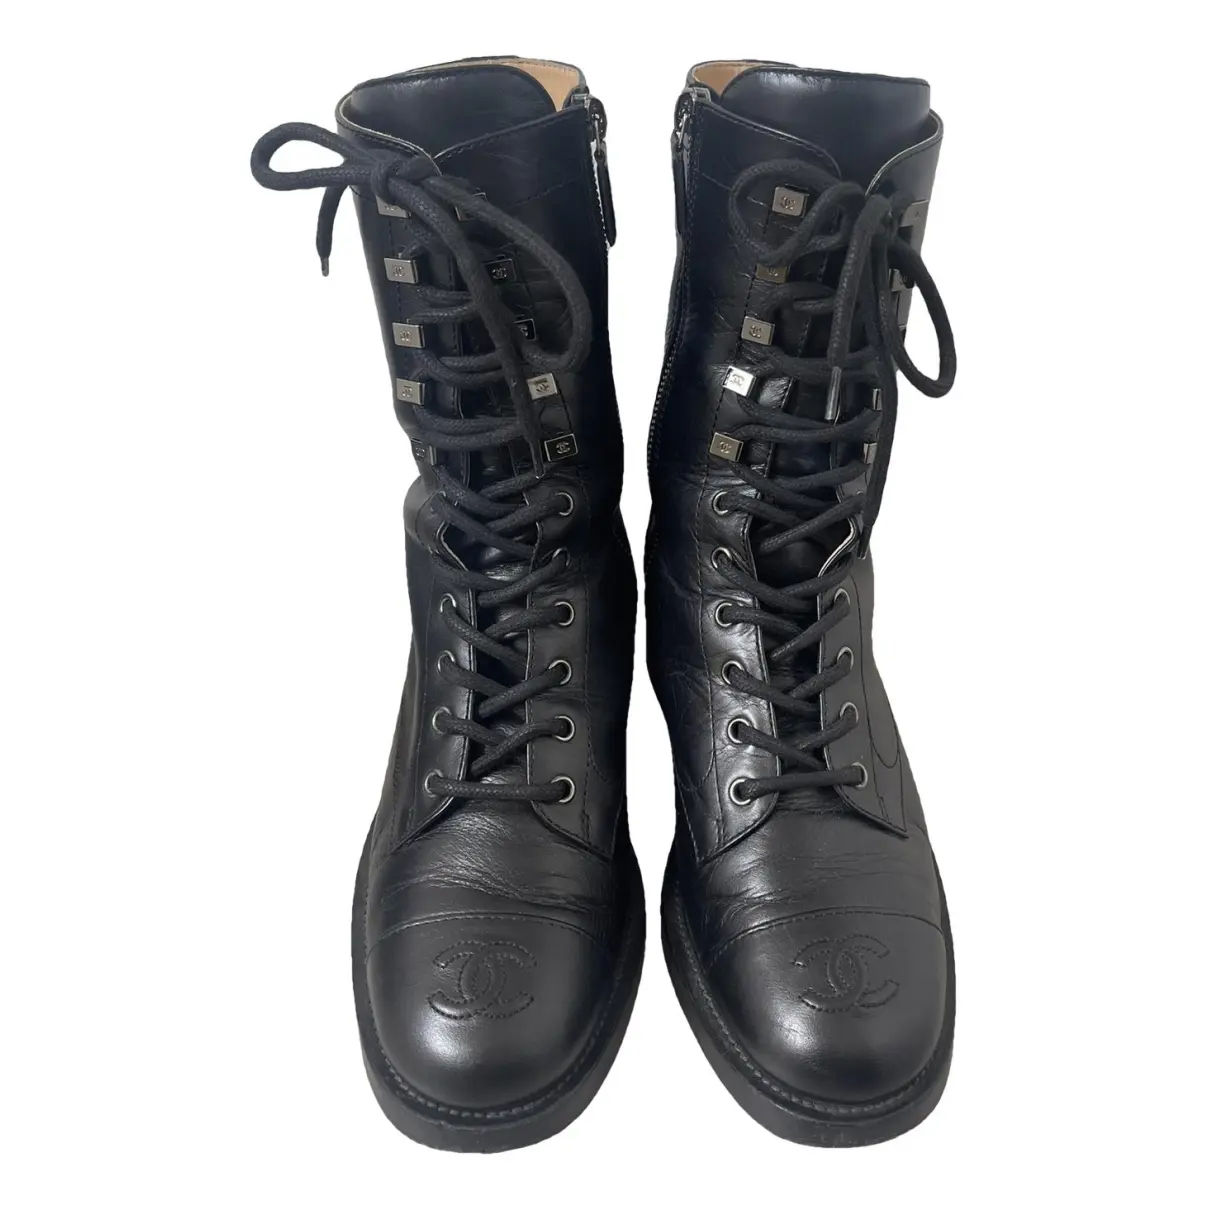 騎士靴皮革Chanel 黑色尺寸39 EU 在皮革- 37414617